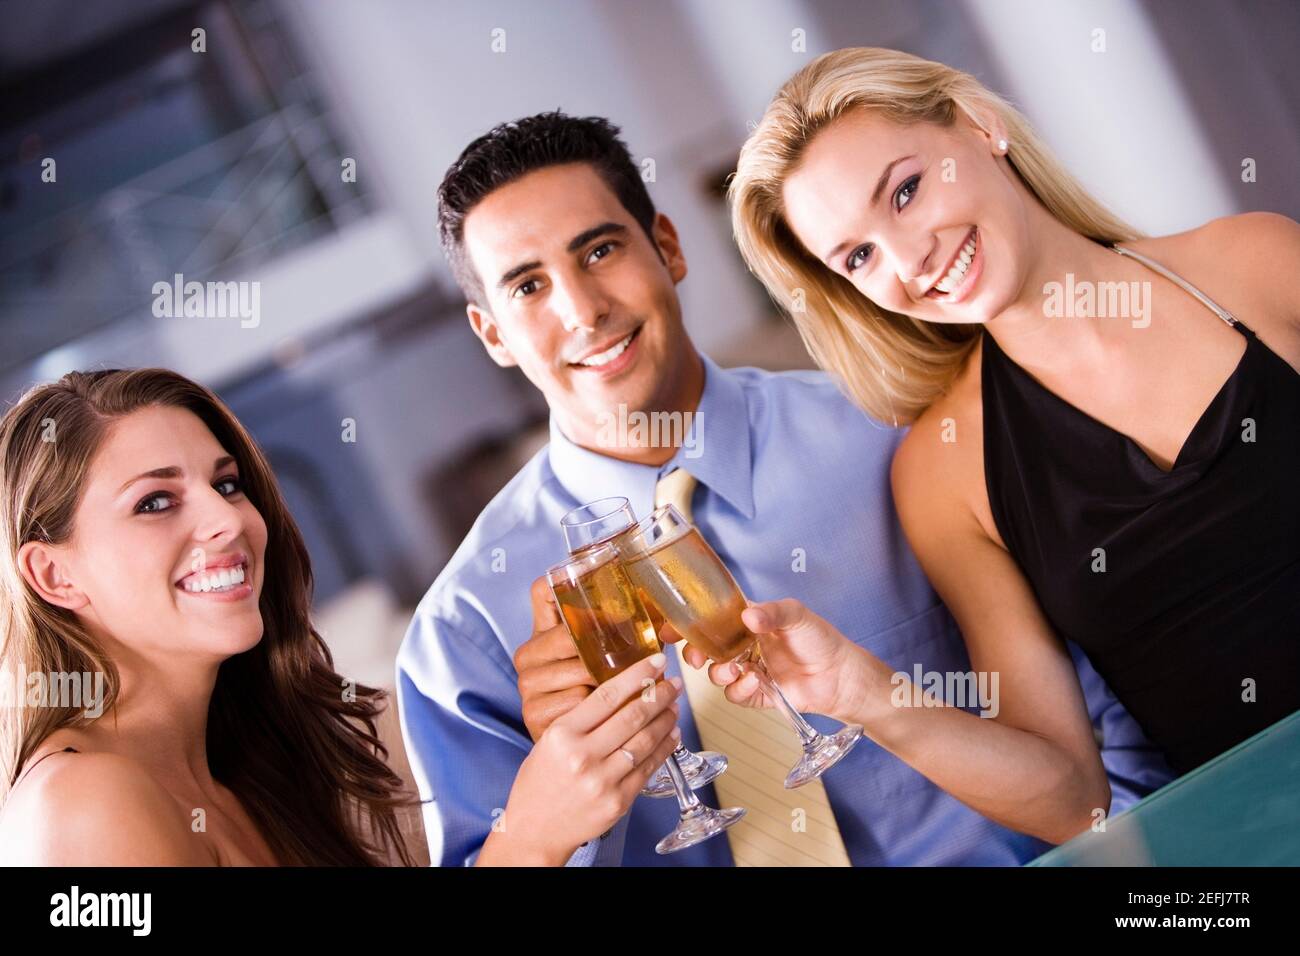 Porträt eines mittleren erwachsenen Mannes und zweier junger Frauen Toast anstoßen Stockfoto